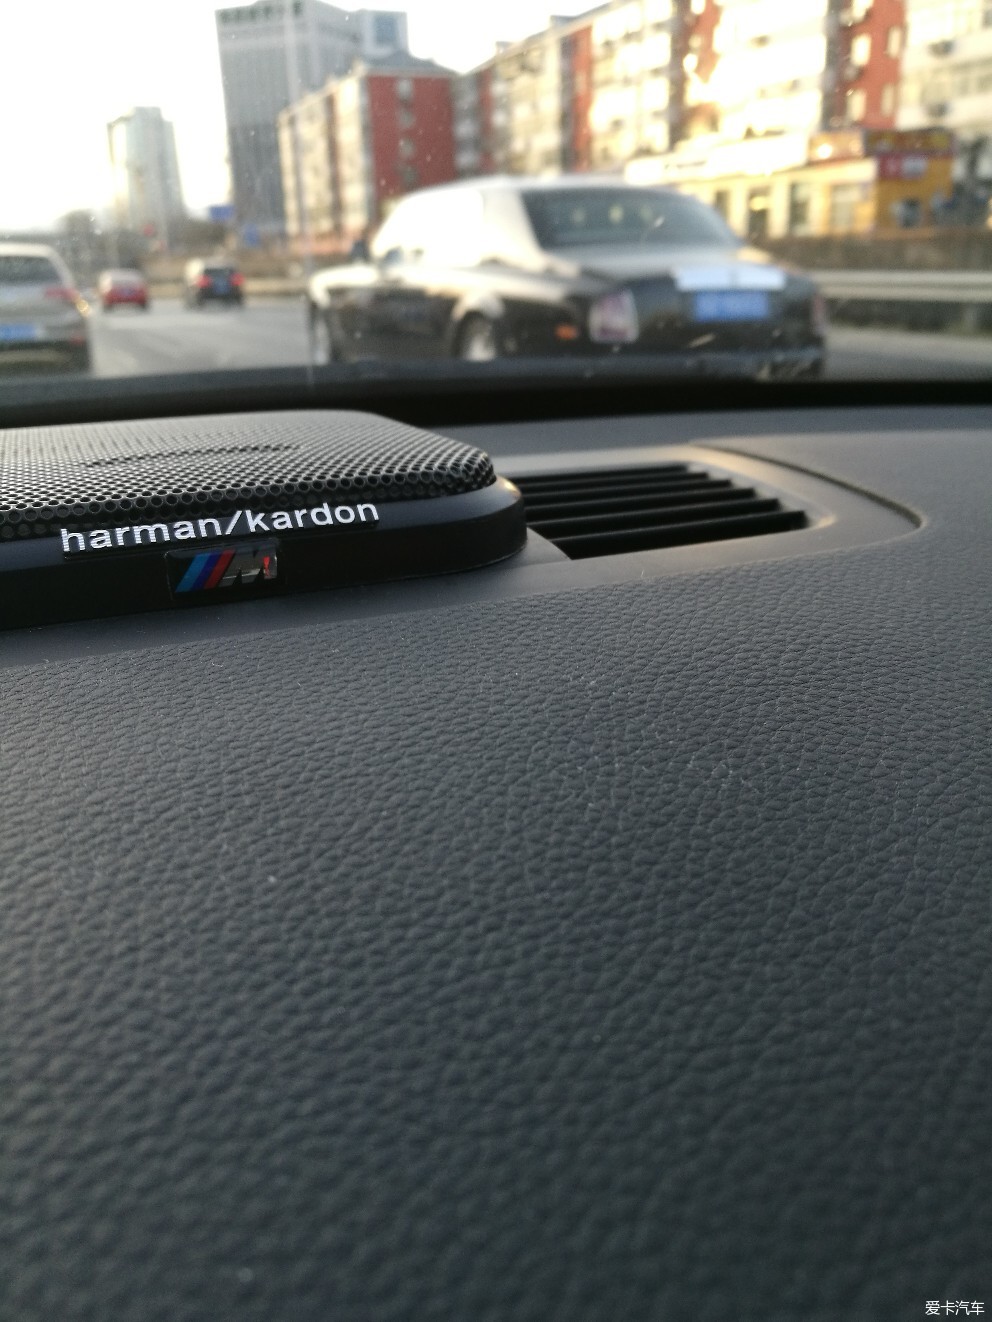 E90 320  自己动手 便宜实惠的哈曼卡顿音响升级